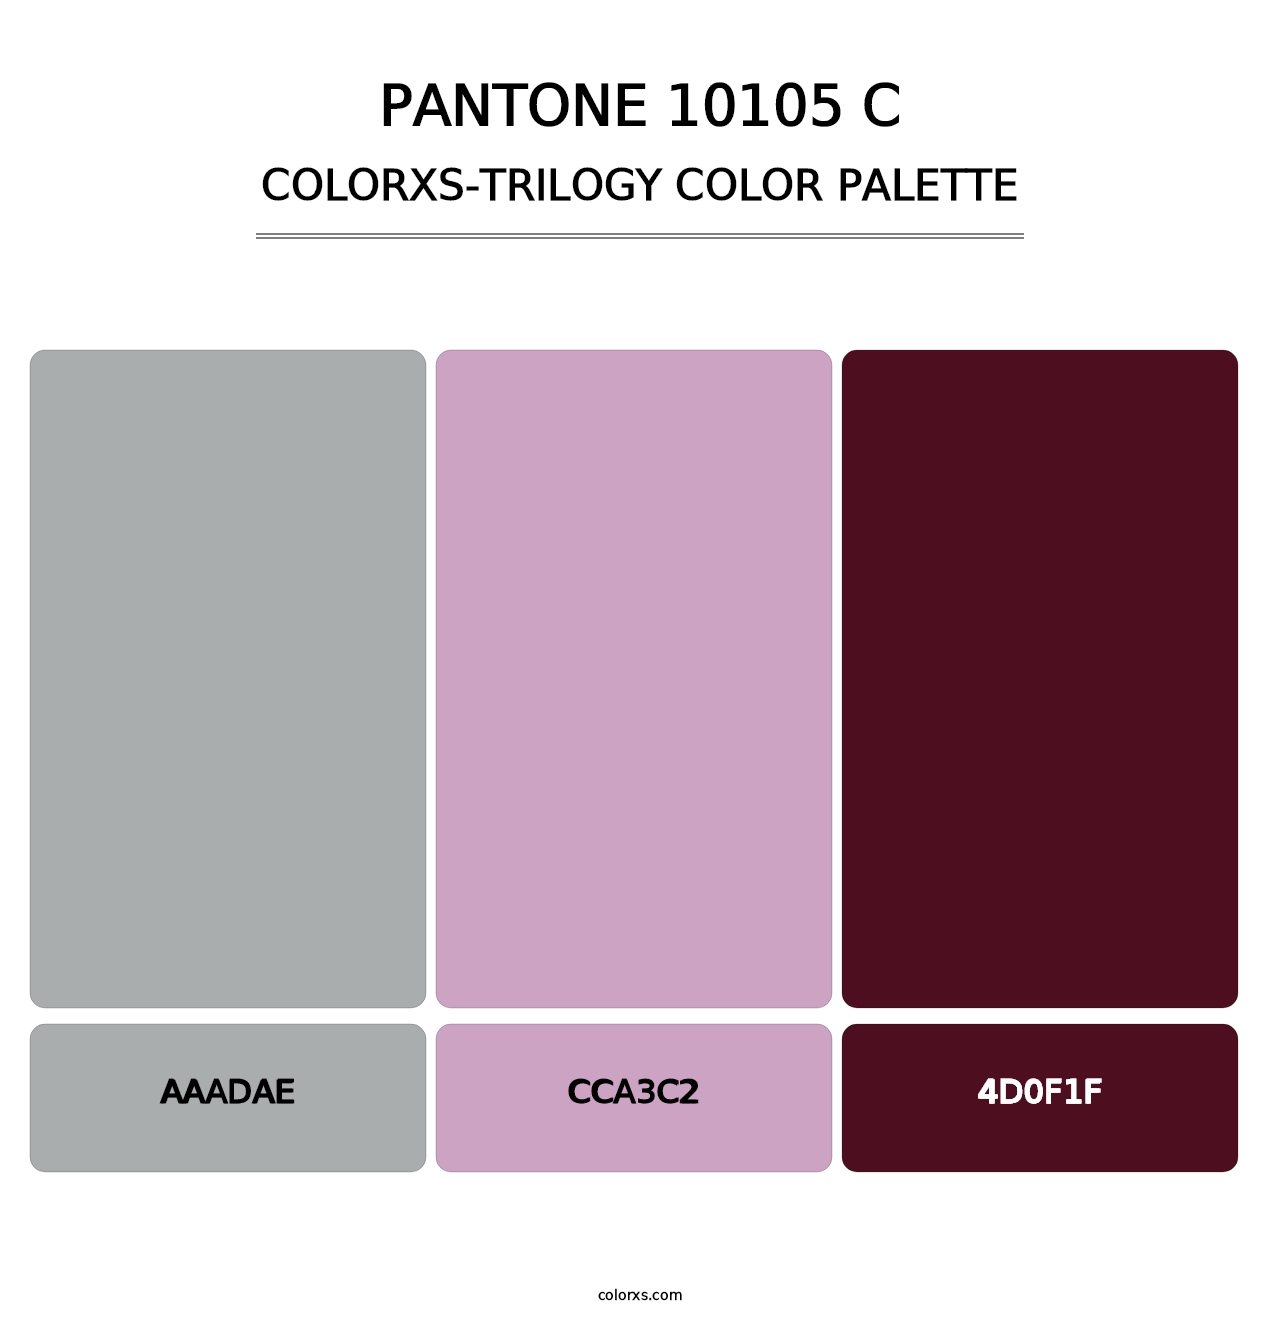 PANTONE 10105 C - Colorxs Trilogy Palette